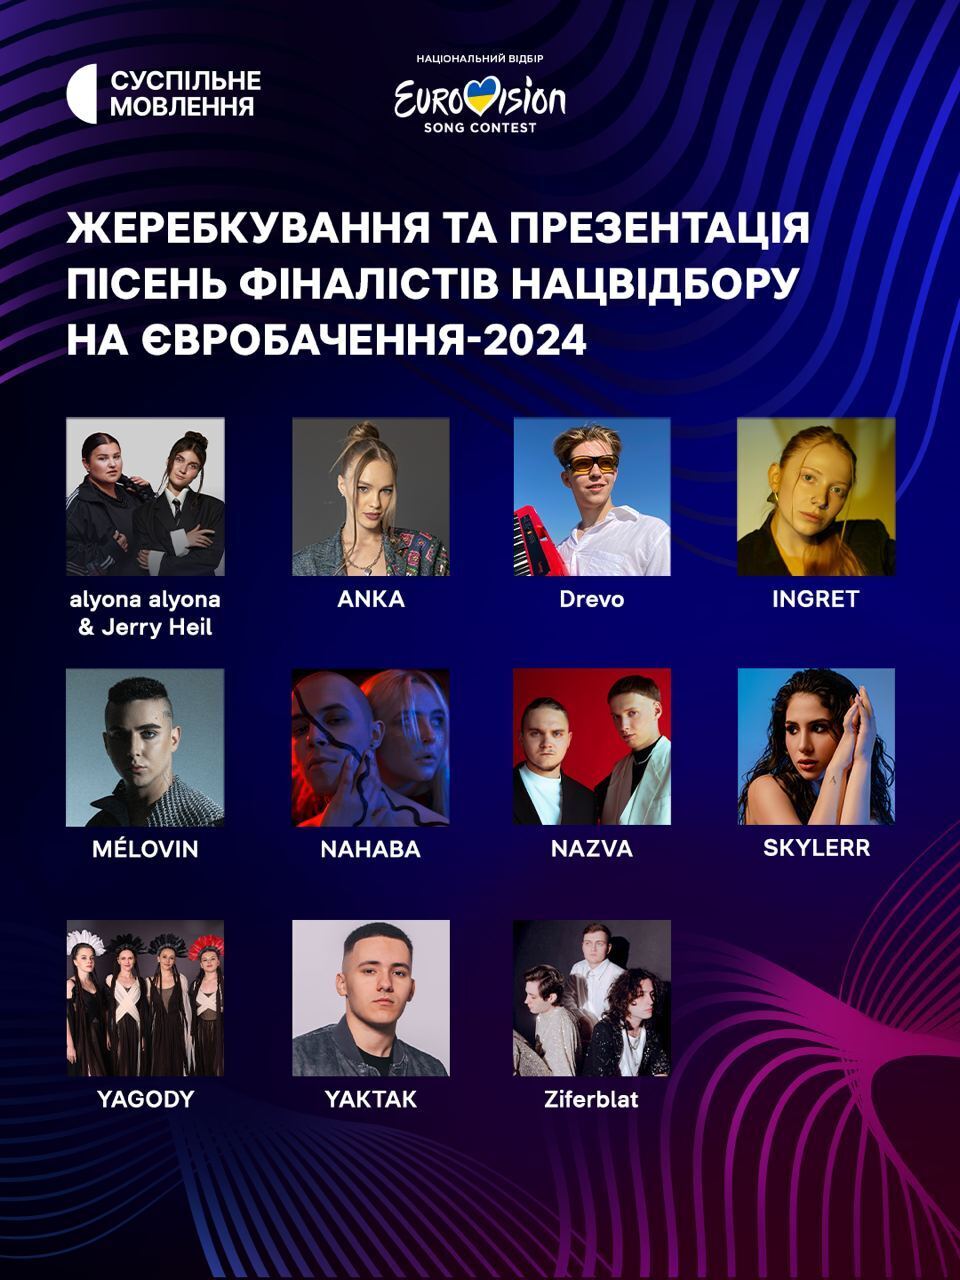 Ситуація кардинально змінилася: шанси України на перемогу в Євробаченні 2024 збільшилися після анонсу пісень учасників нацвідбору